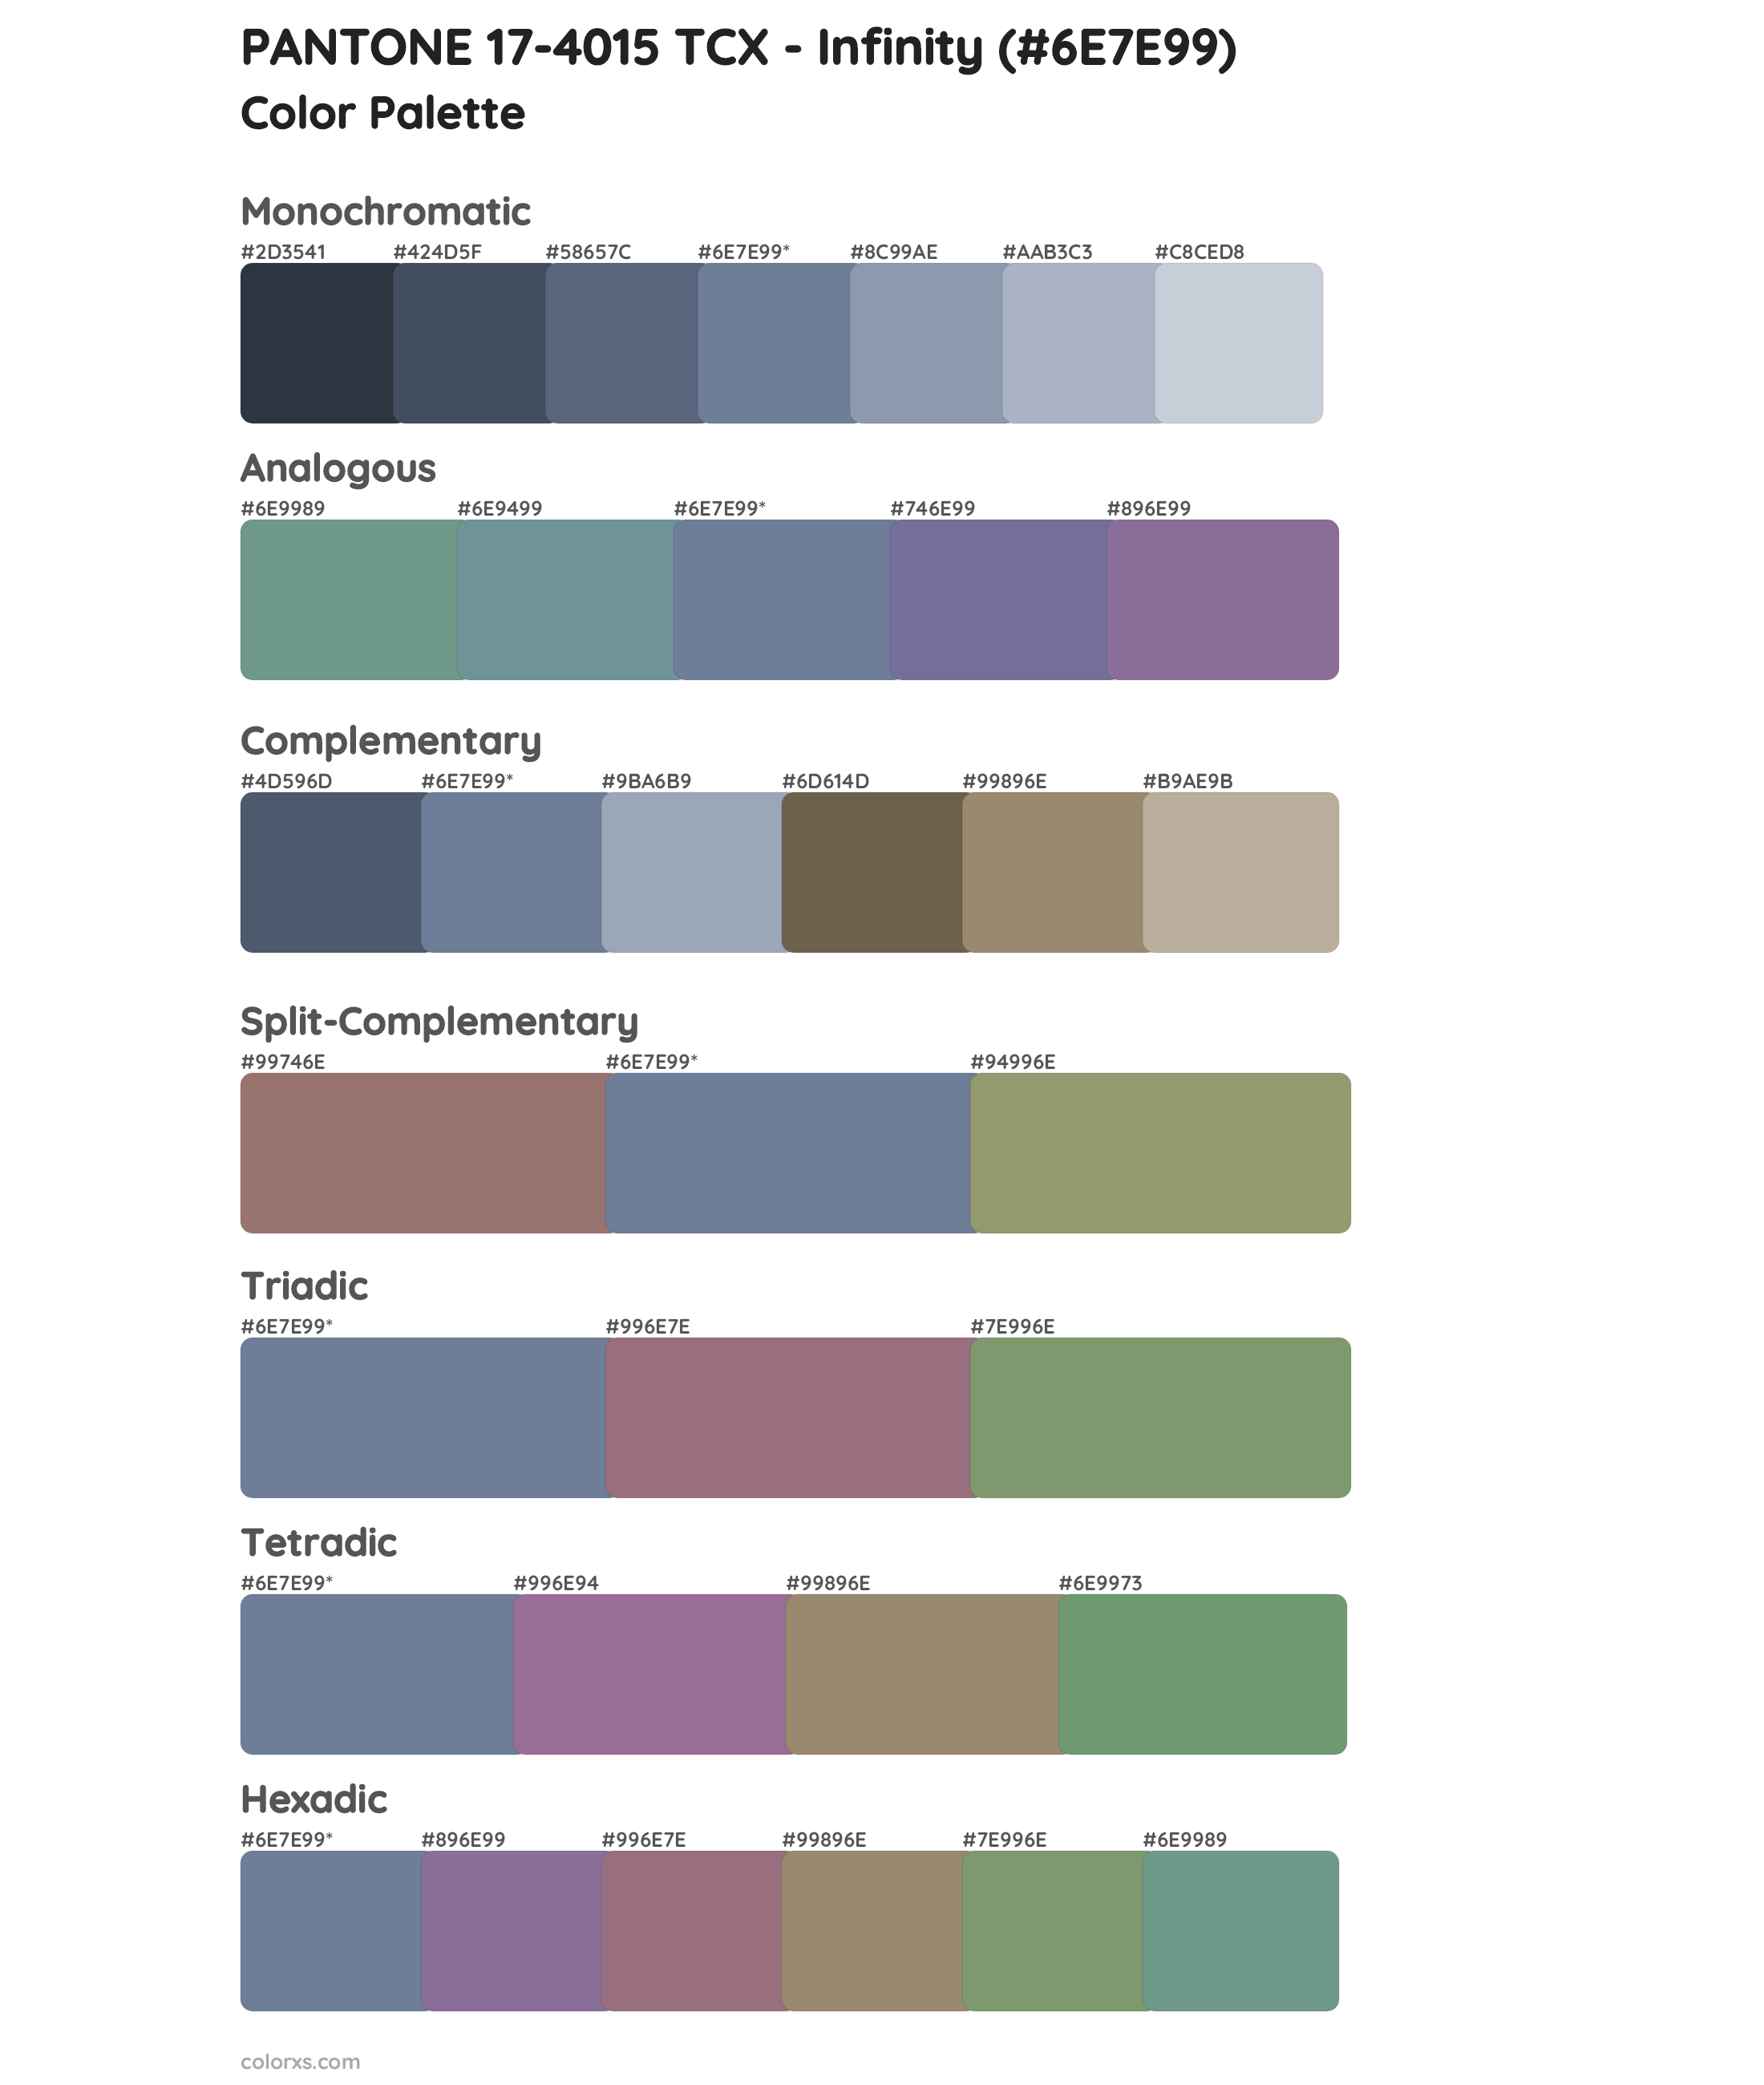 PANTONE 17-4015 TCX - Infinity Color Scheme Palettes